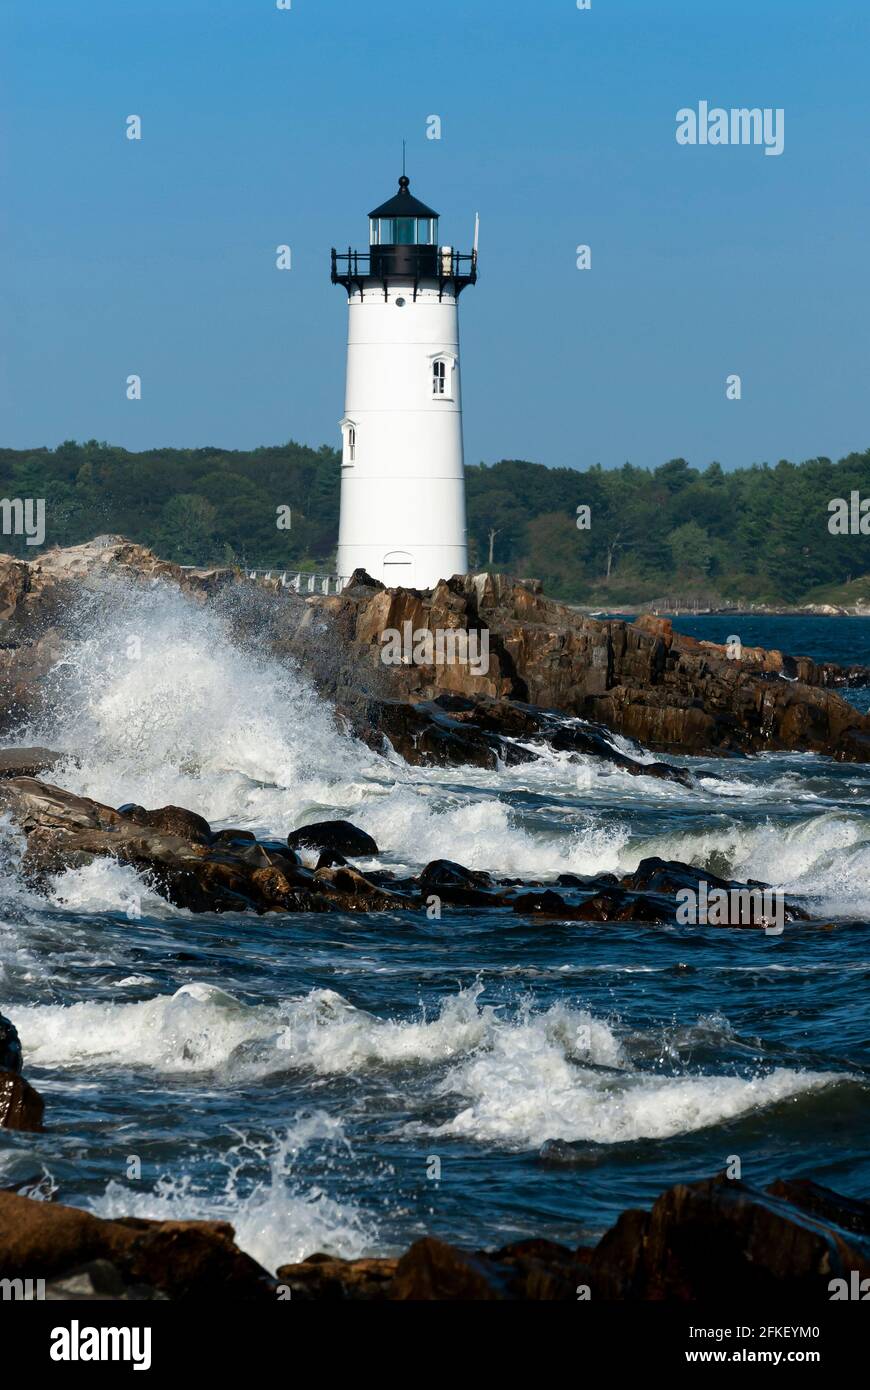 De grandes vagues se brisent sur le rivage rocheux près du phare de Portsmouth Harbour, également connu sous le nom de fort Constitution Light, dans la côte du New Hampshire. C'est un favori Banque D'Images